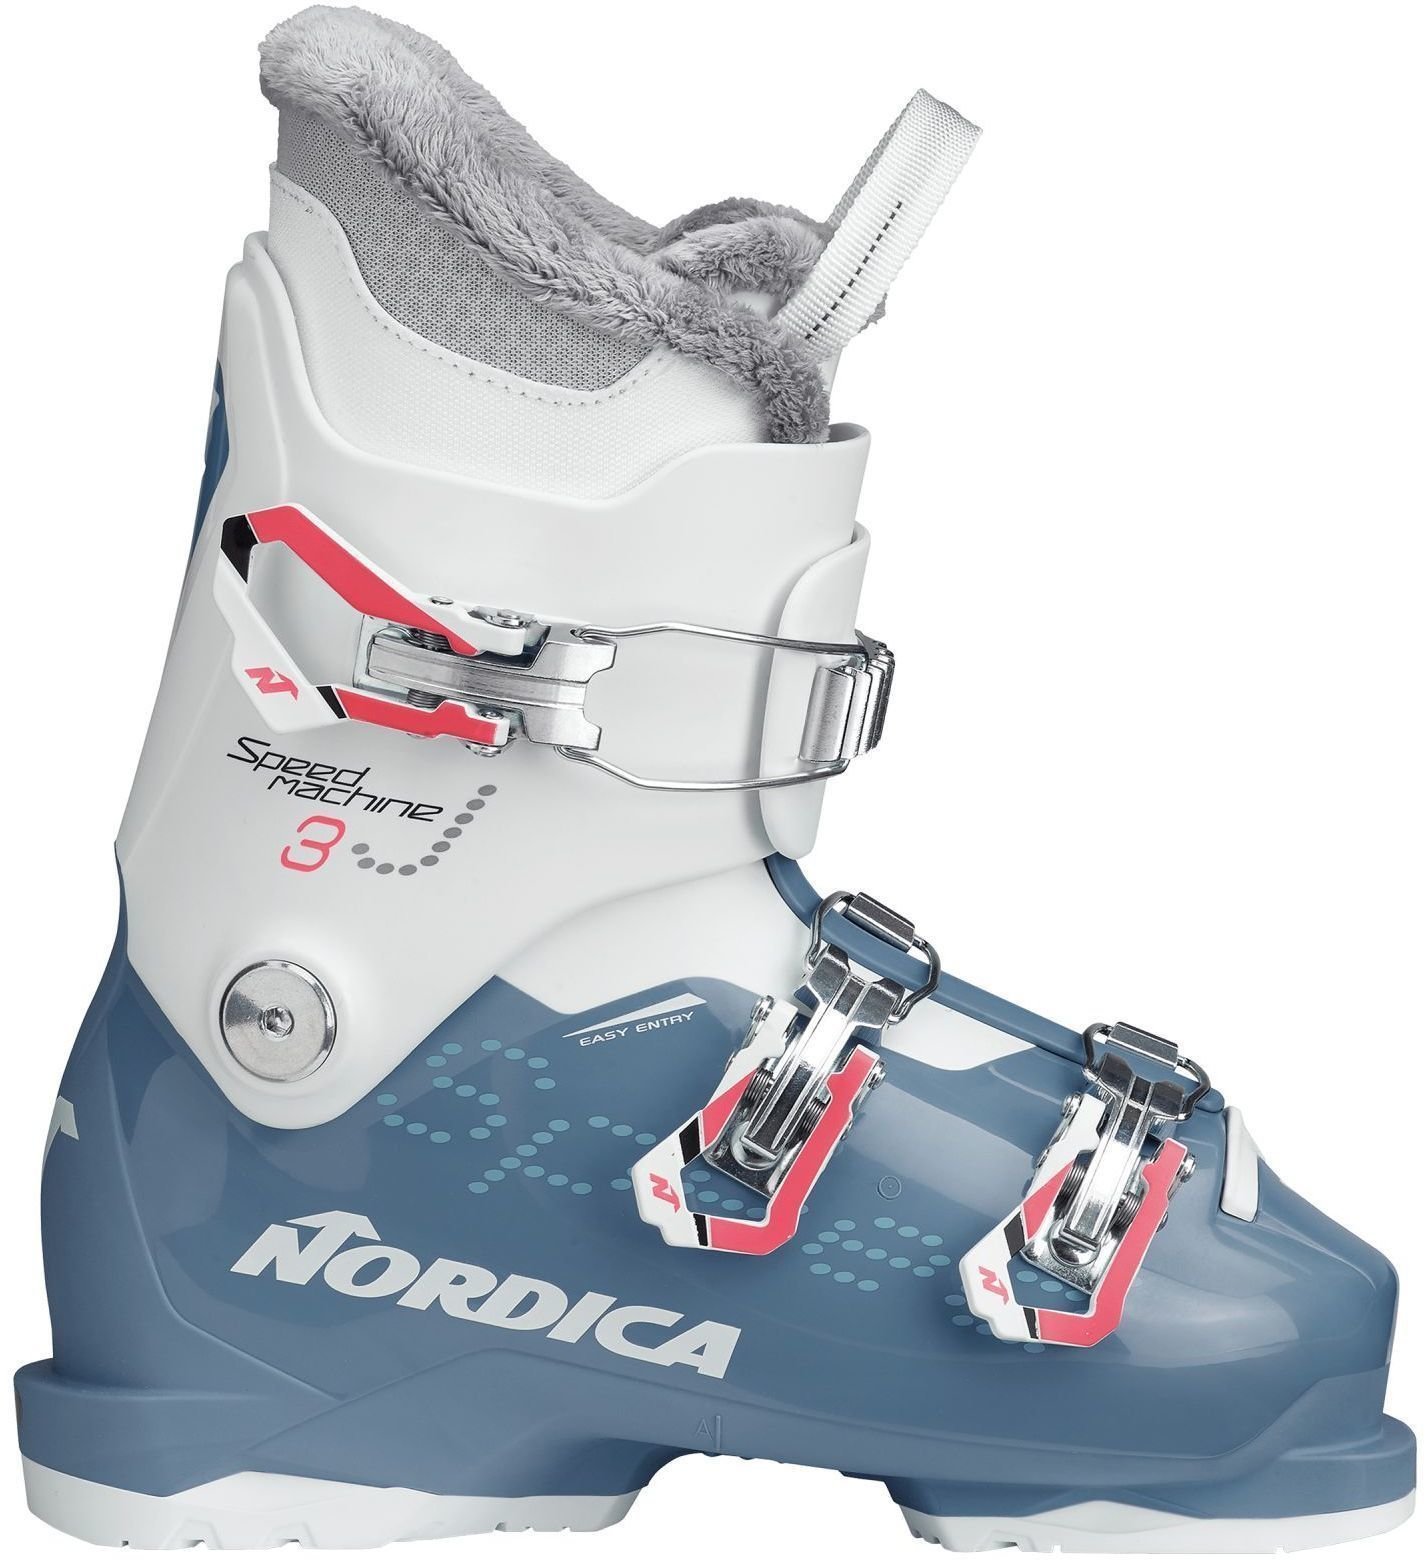 Alpineskischoenen Nordica Speedmachine J3 Light Blue/White 200 Alpineskischoenen